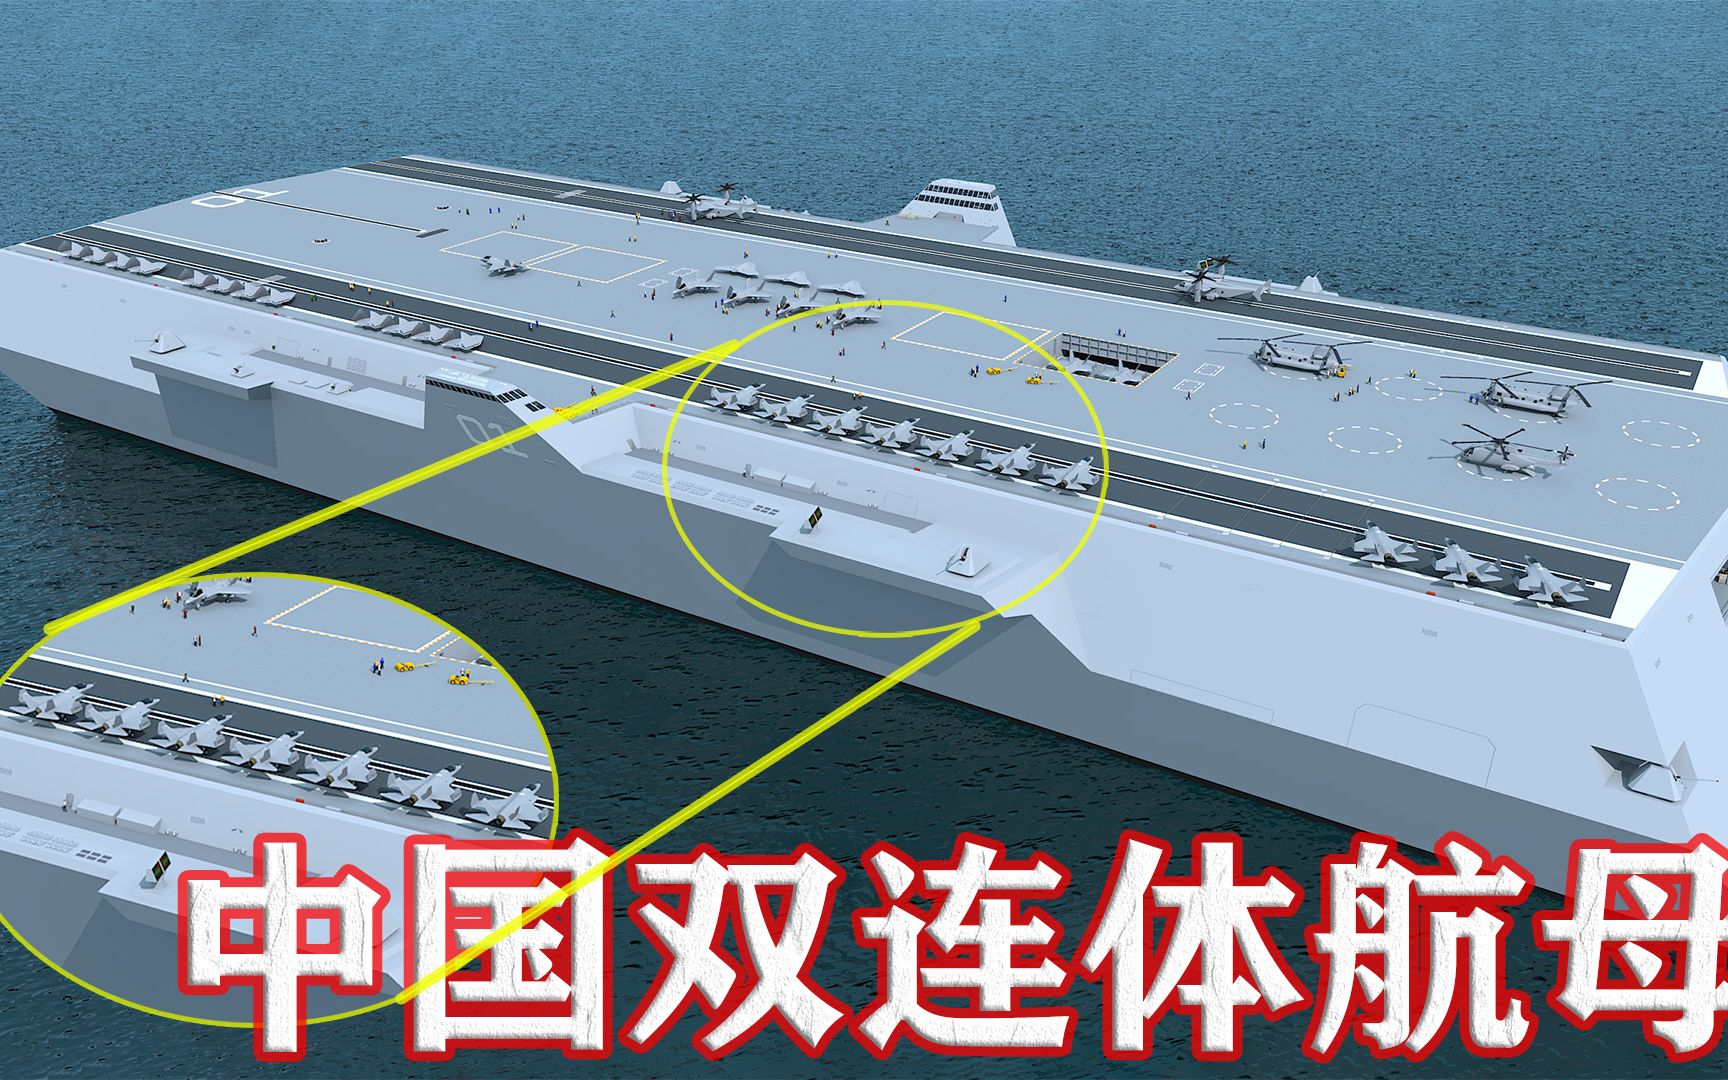 18万吨!中国或开建双连体异型航母:可搭载百架歼20!